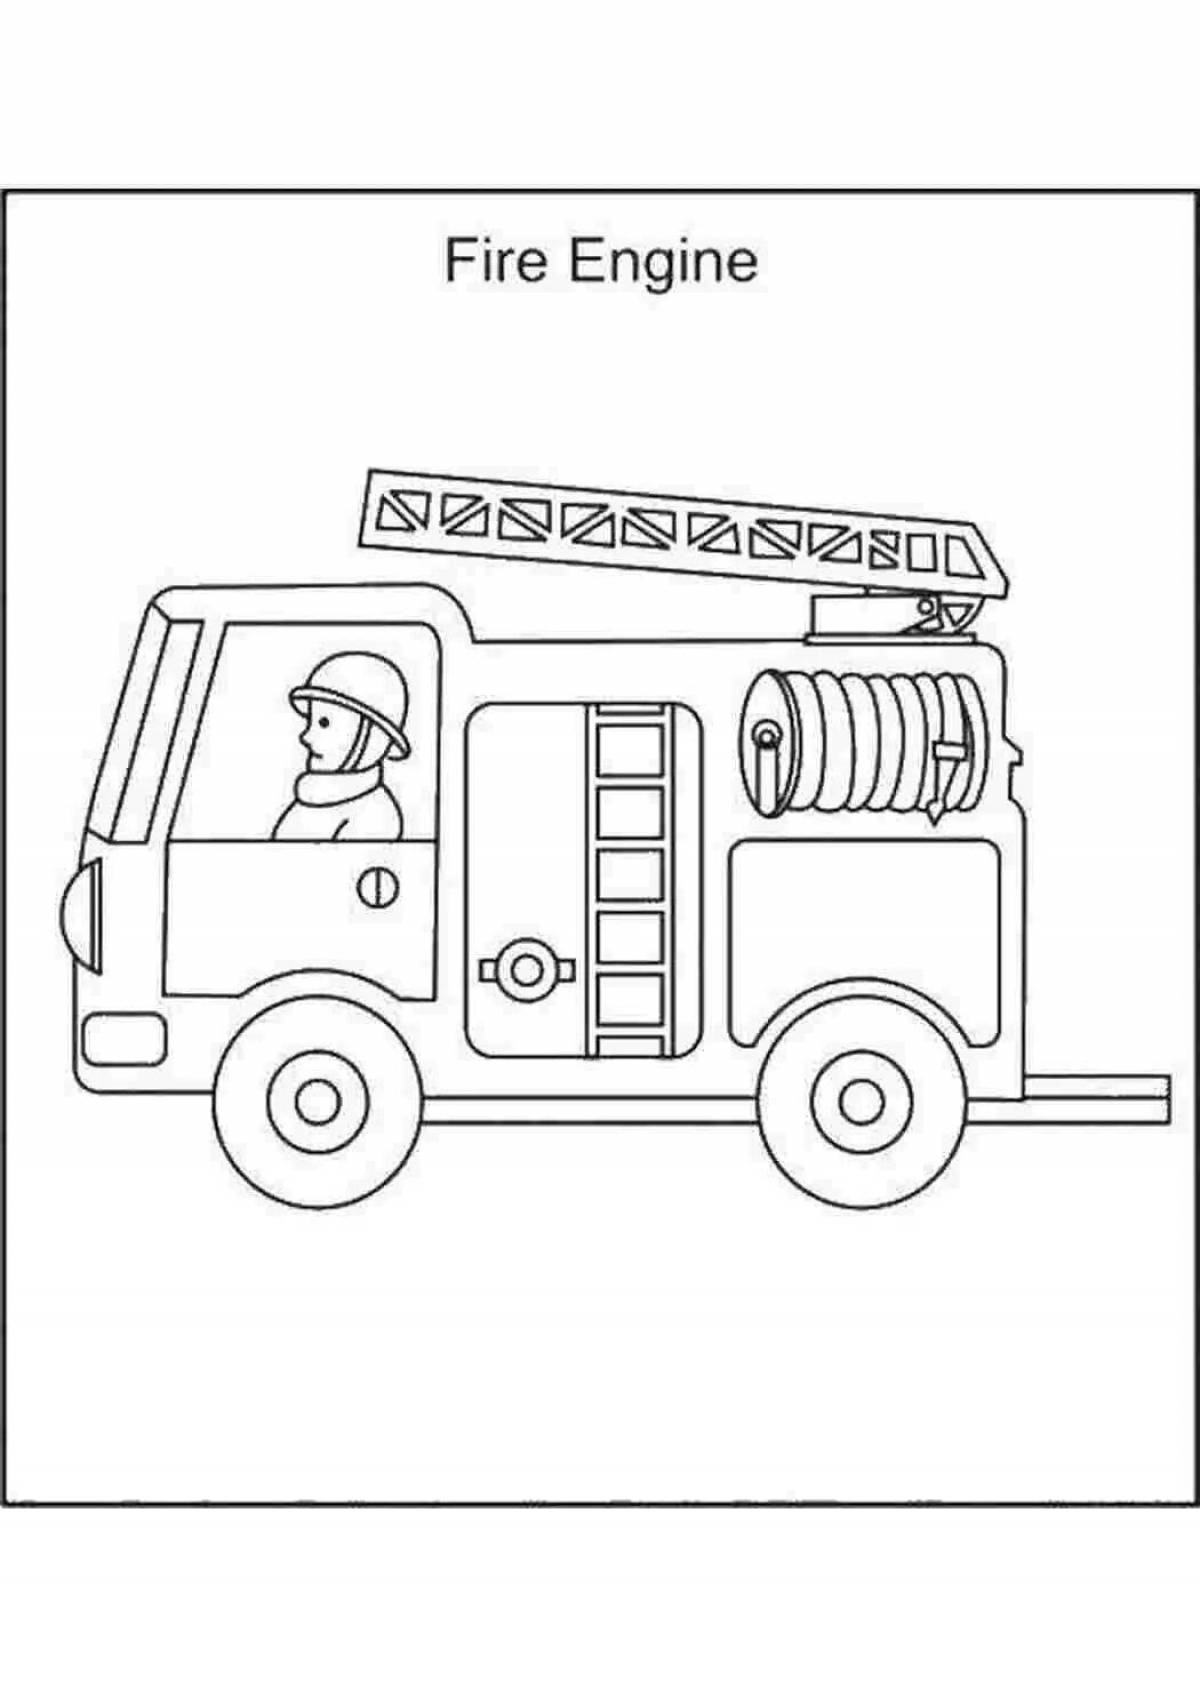 Чудесная раскраска пожарной машины для детей